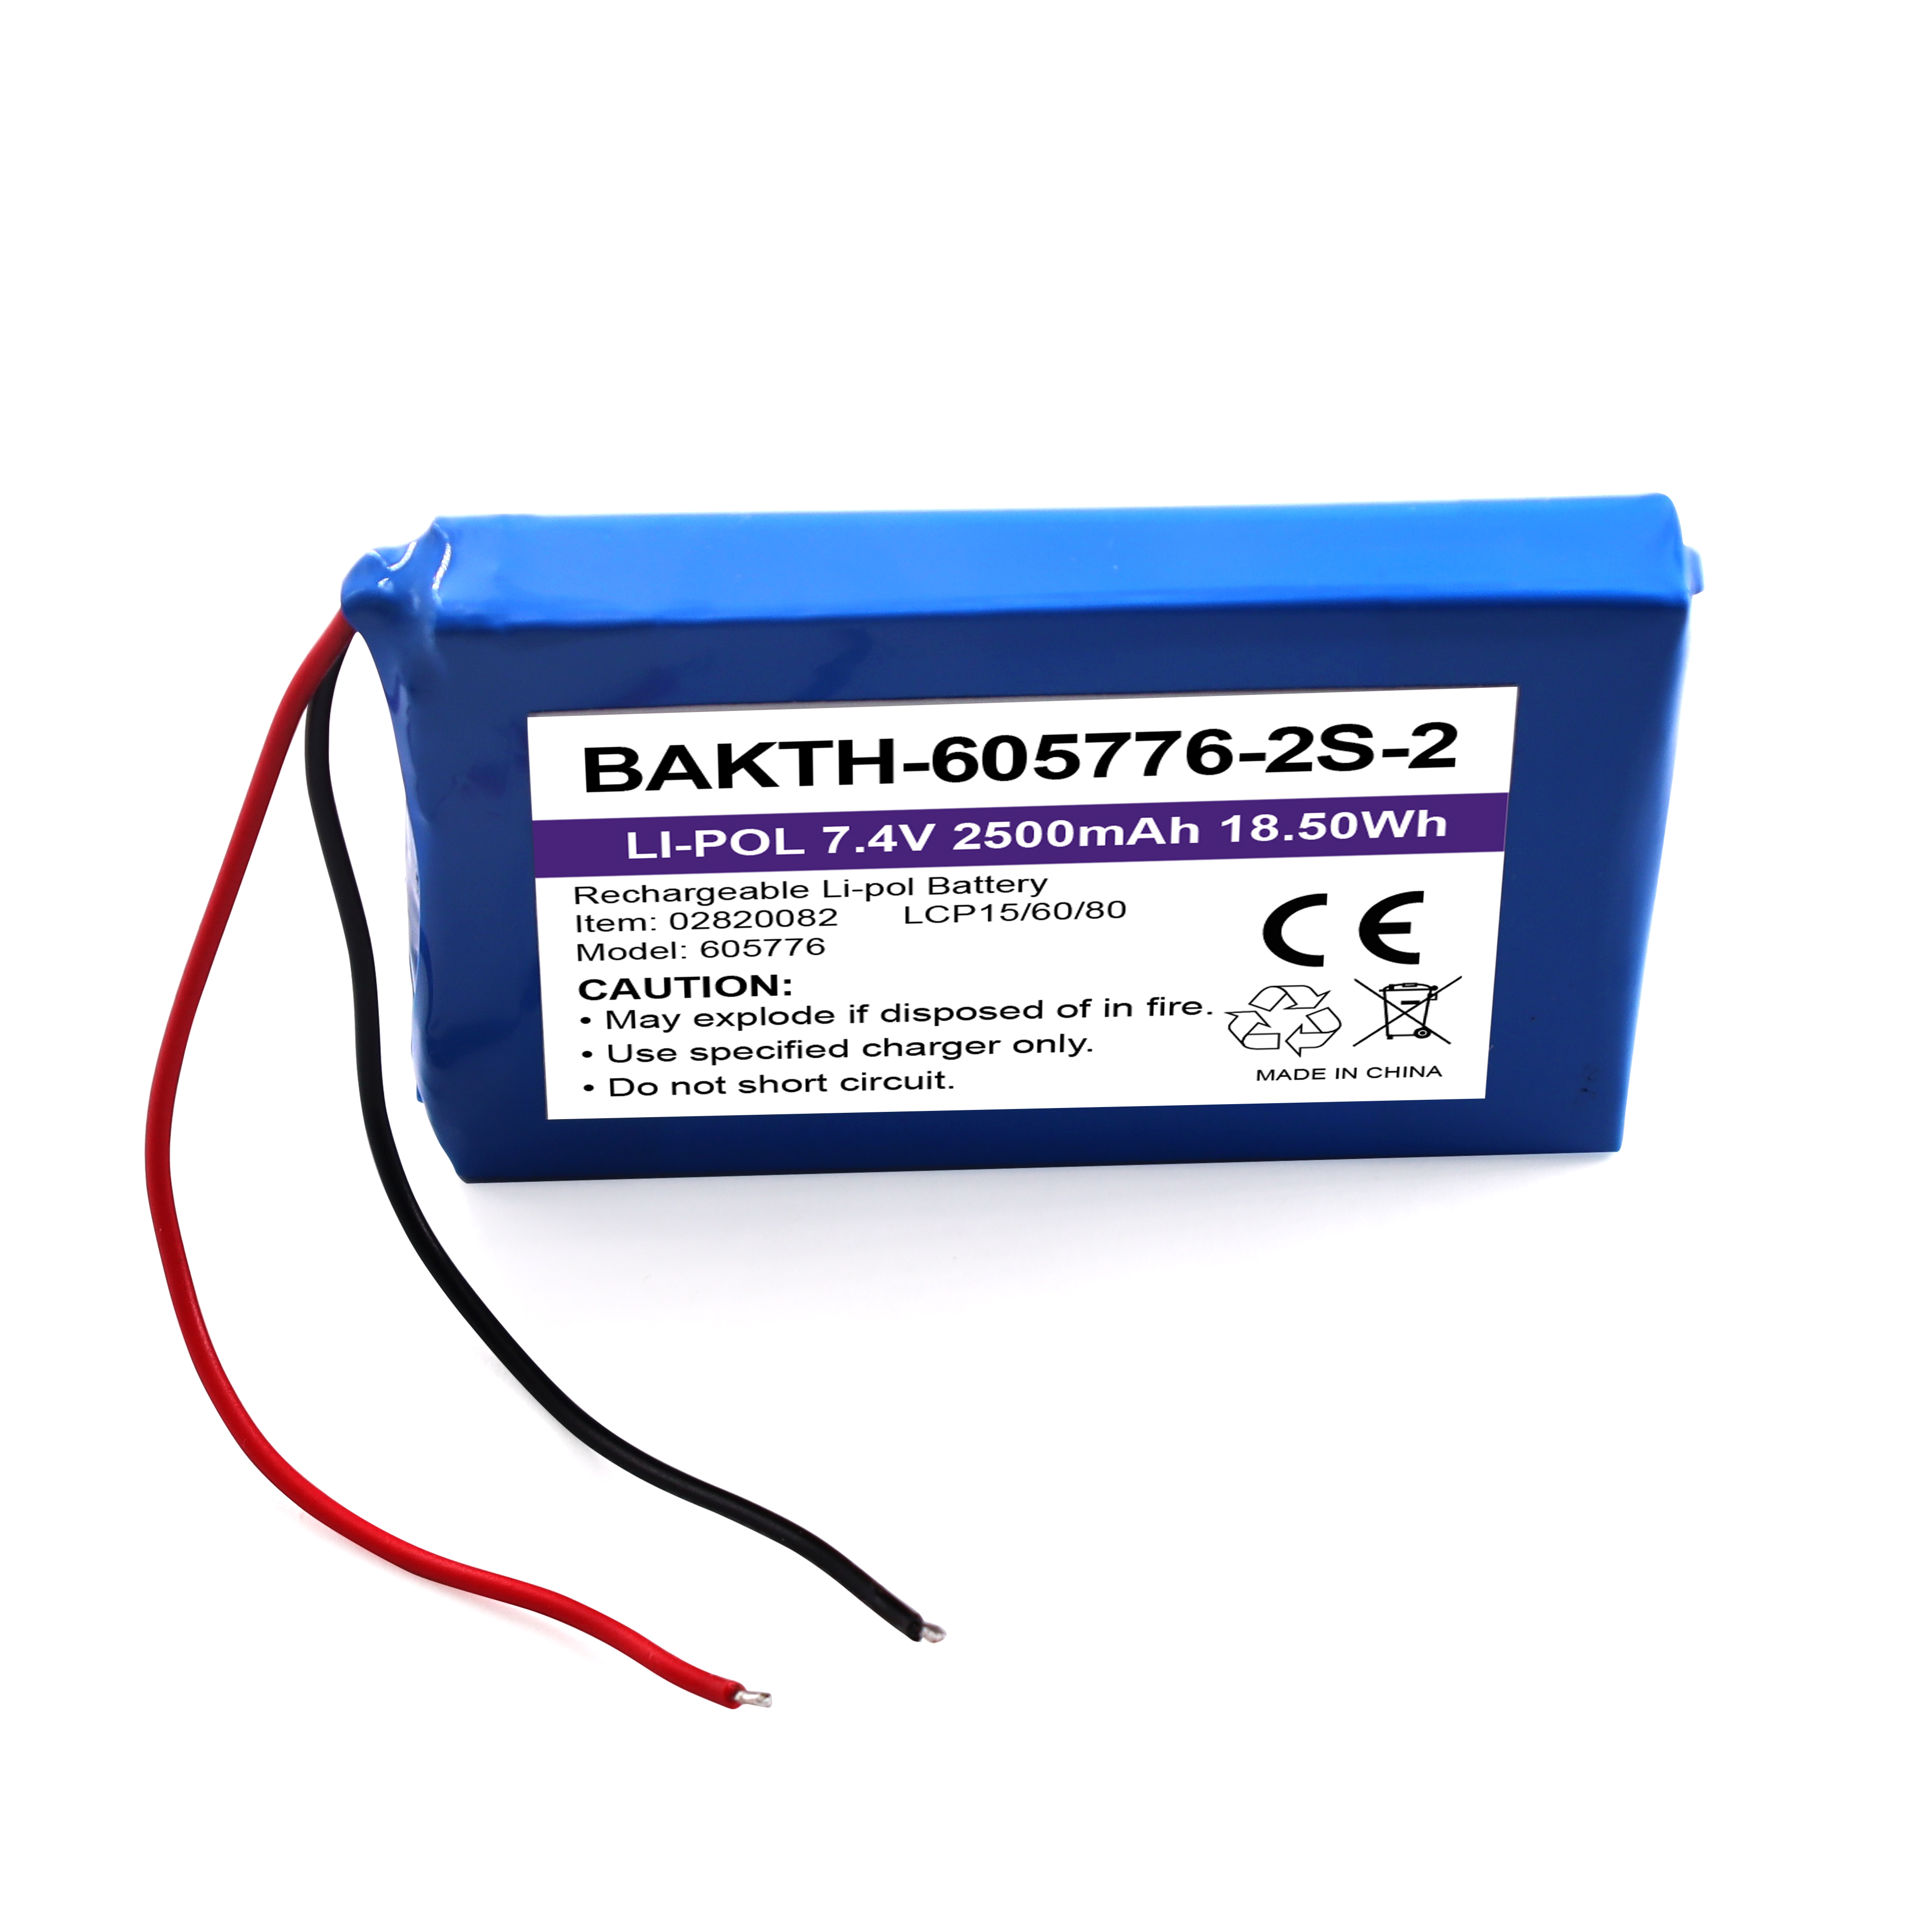 Bakth-605776P-2S-2 wiederaufladbar 7,4 V 2500mAh Lithium Polymer Batteriepack Customized Battery Austauschpaket